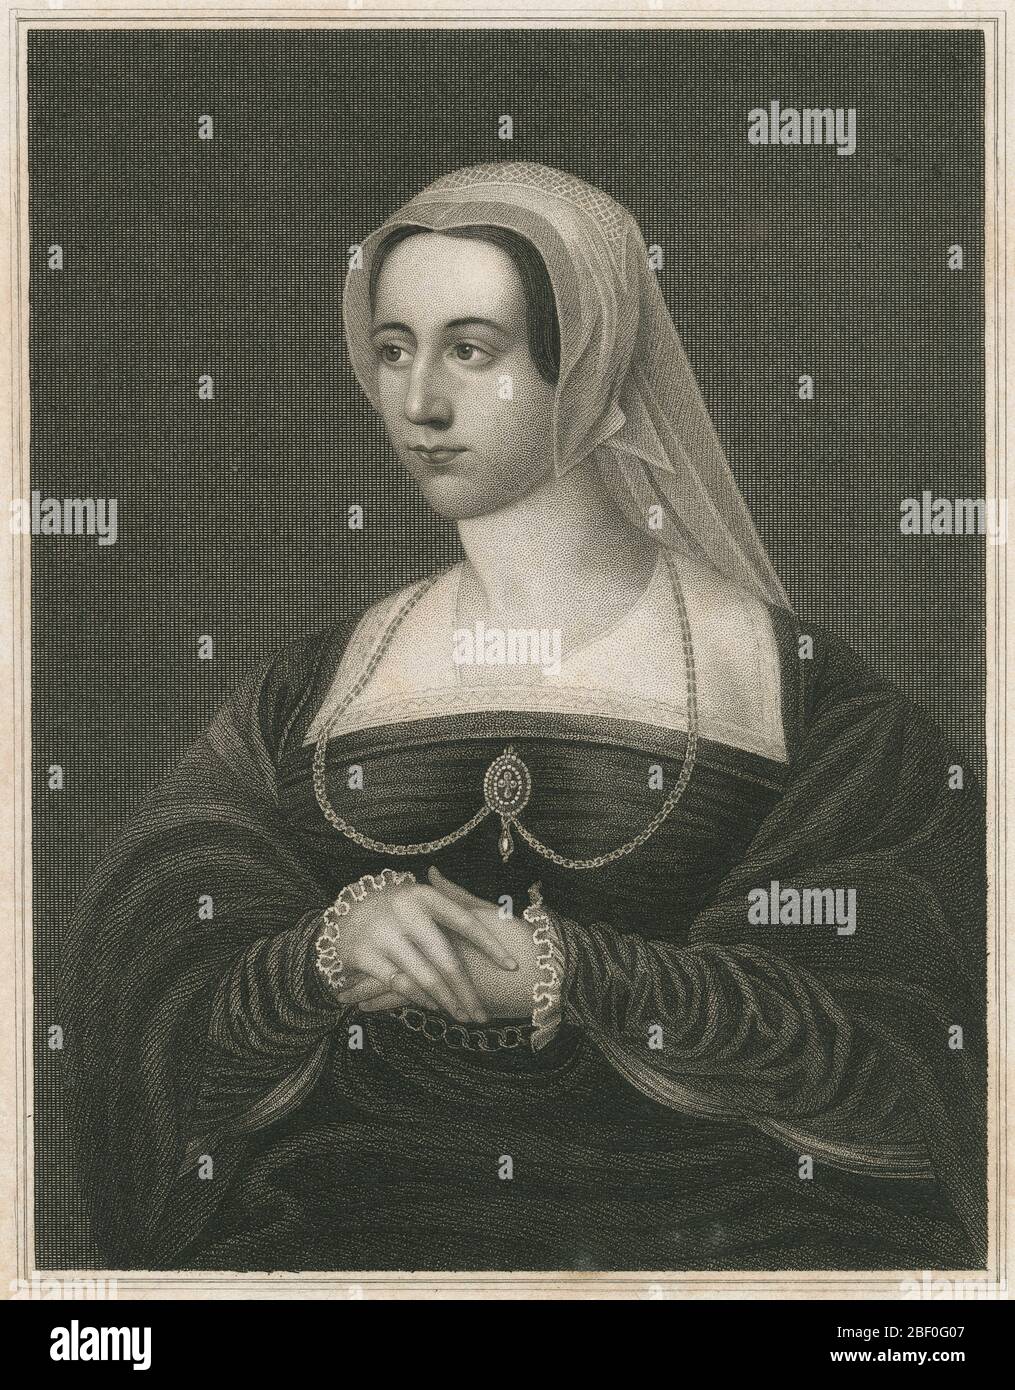 Antike 1829 Gravur, Catherine Parr. Catherine Parr (1512-1548) war Königin Gemahlin von England und Irland (1543-47) als letzte der sechs Ehefrauen von König Heinrich VIII. Und die letzte Königin Gemahlin des Hauses Tudor. QUELLE: ORIGINALGRAVUR Stockfoto